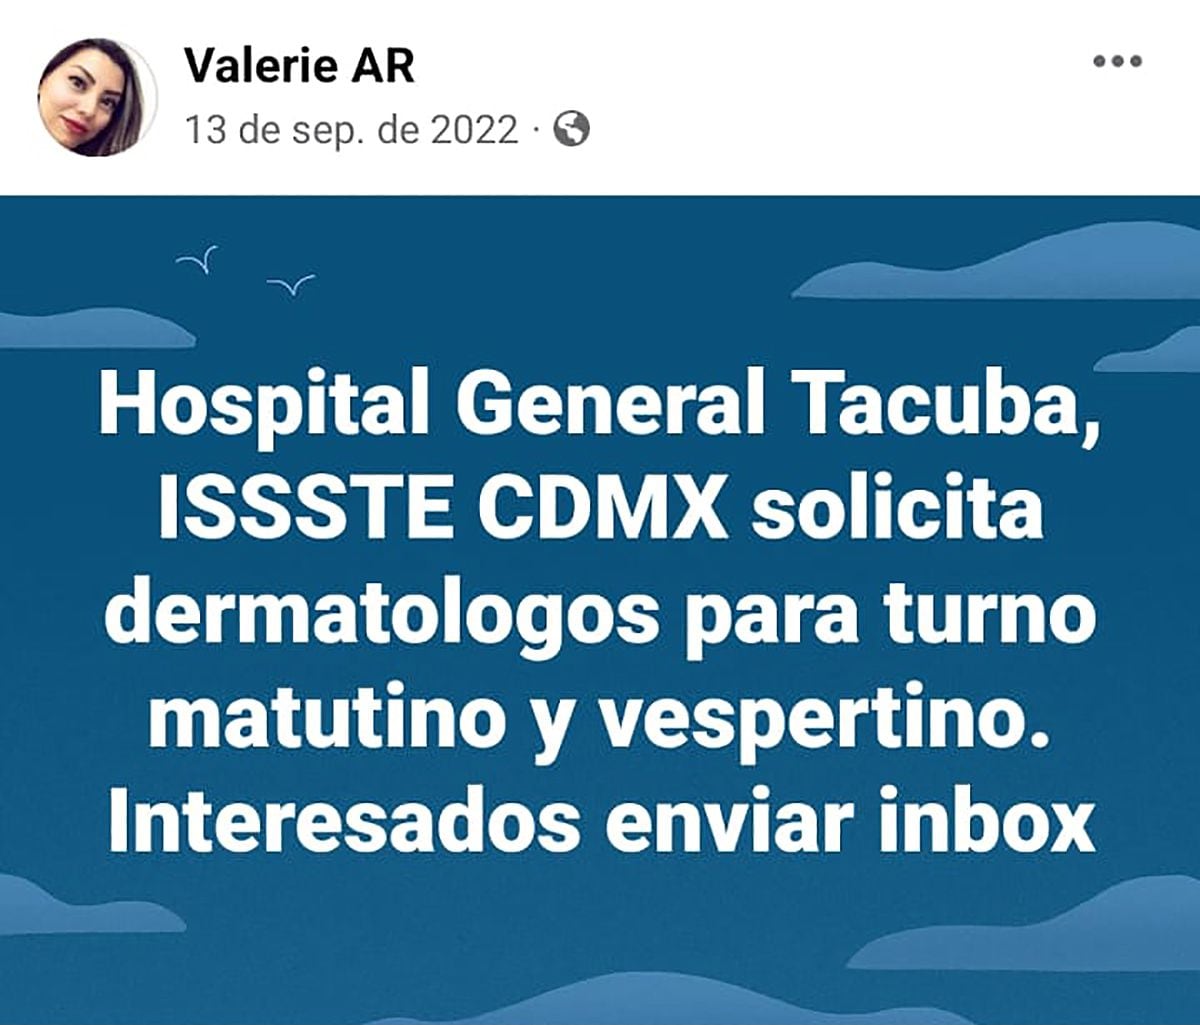 Redes sociales de la doctora, Valerie Alcántara Ramírez